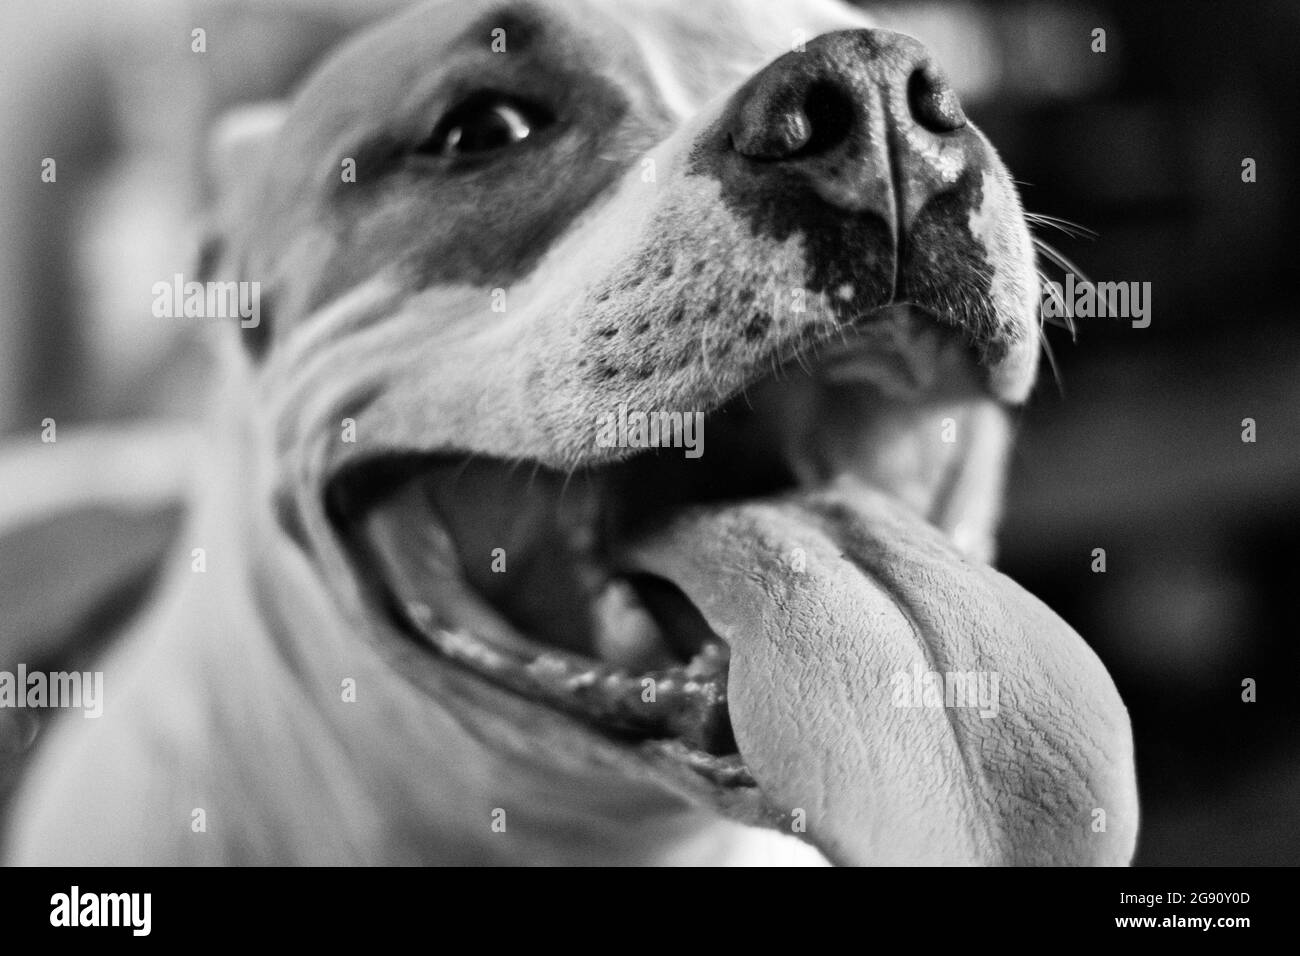 Un pantalon de chien pitbull de race mixte (américain et américain Staffordshire Pit Bull Terriers) (Canis lupus familiaris), qui a l'air heureux. Banque D'Images